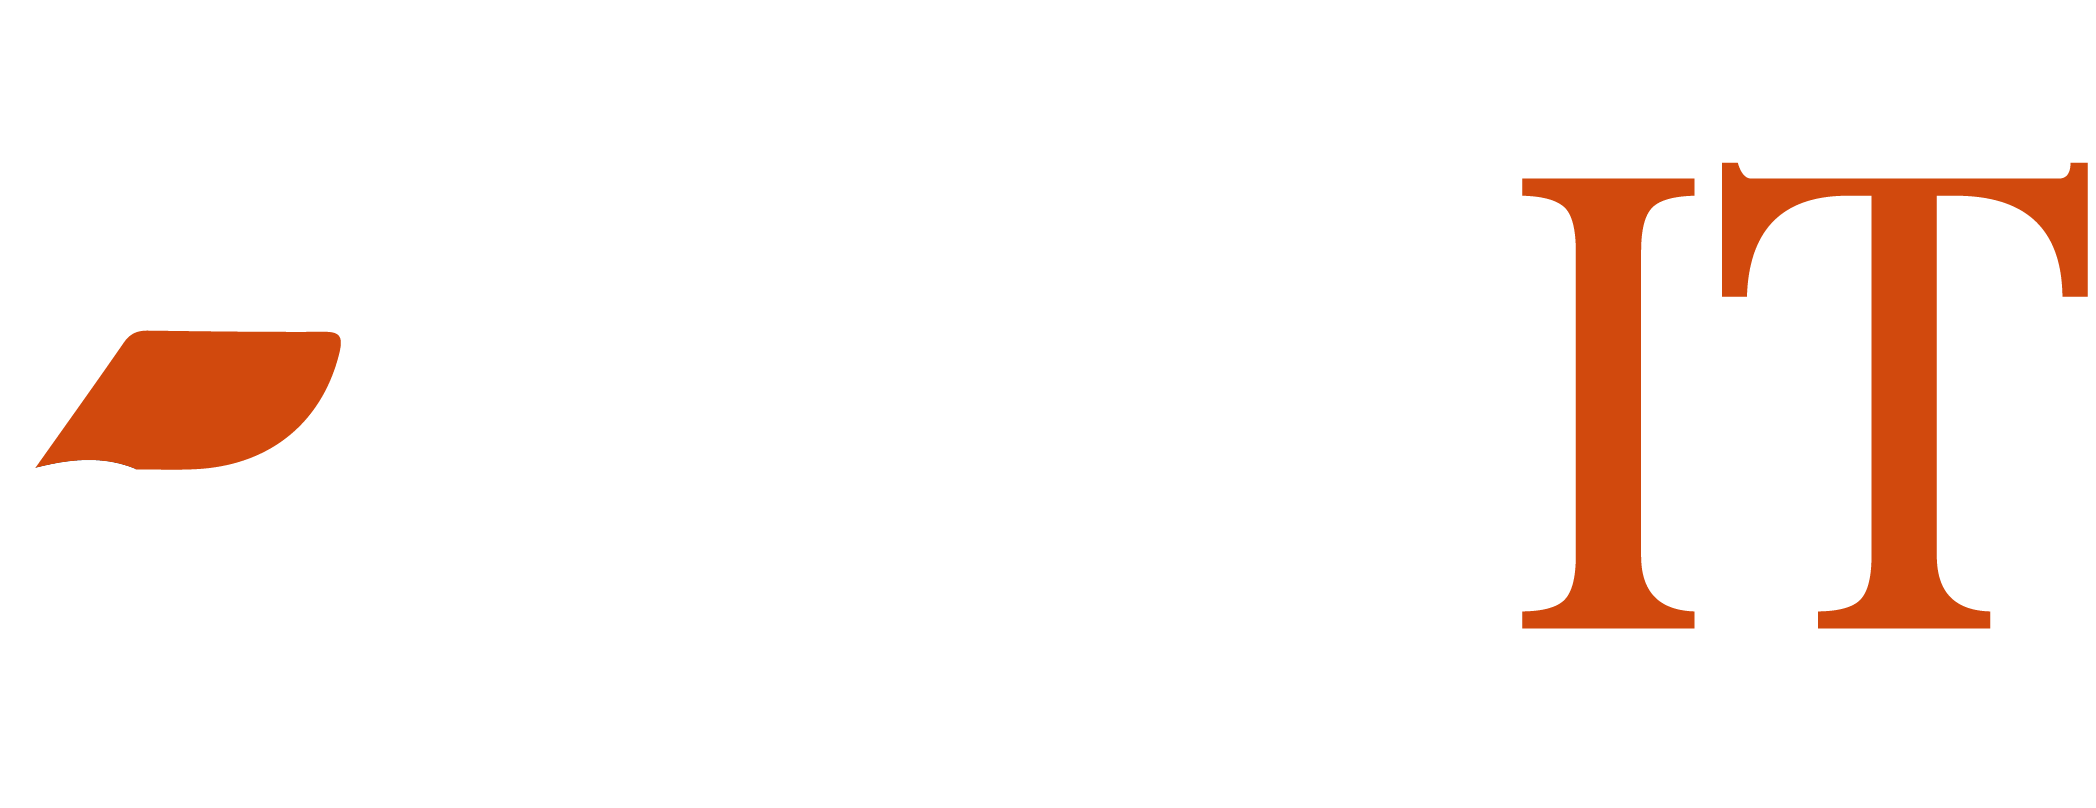 folksit-footer-logo.png